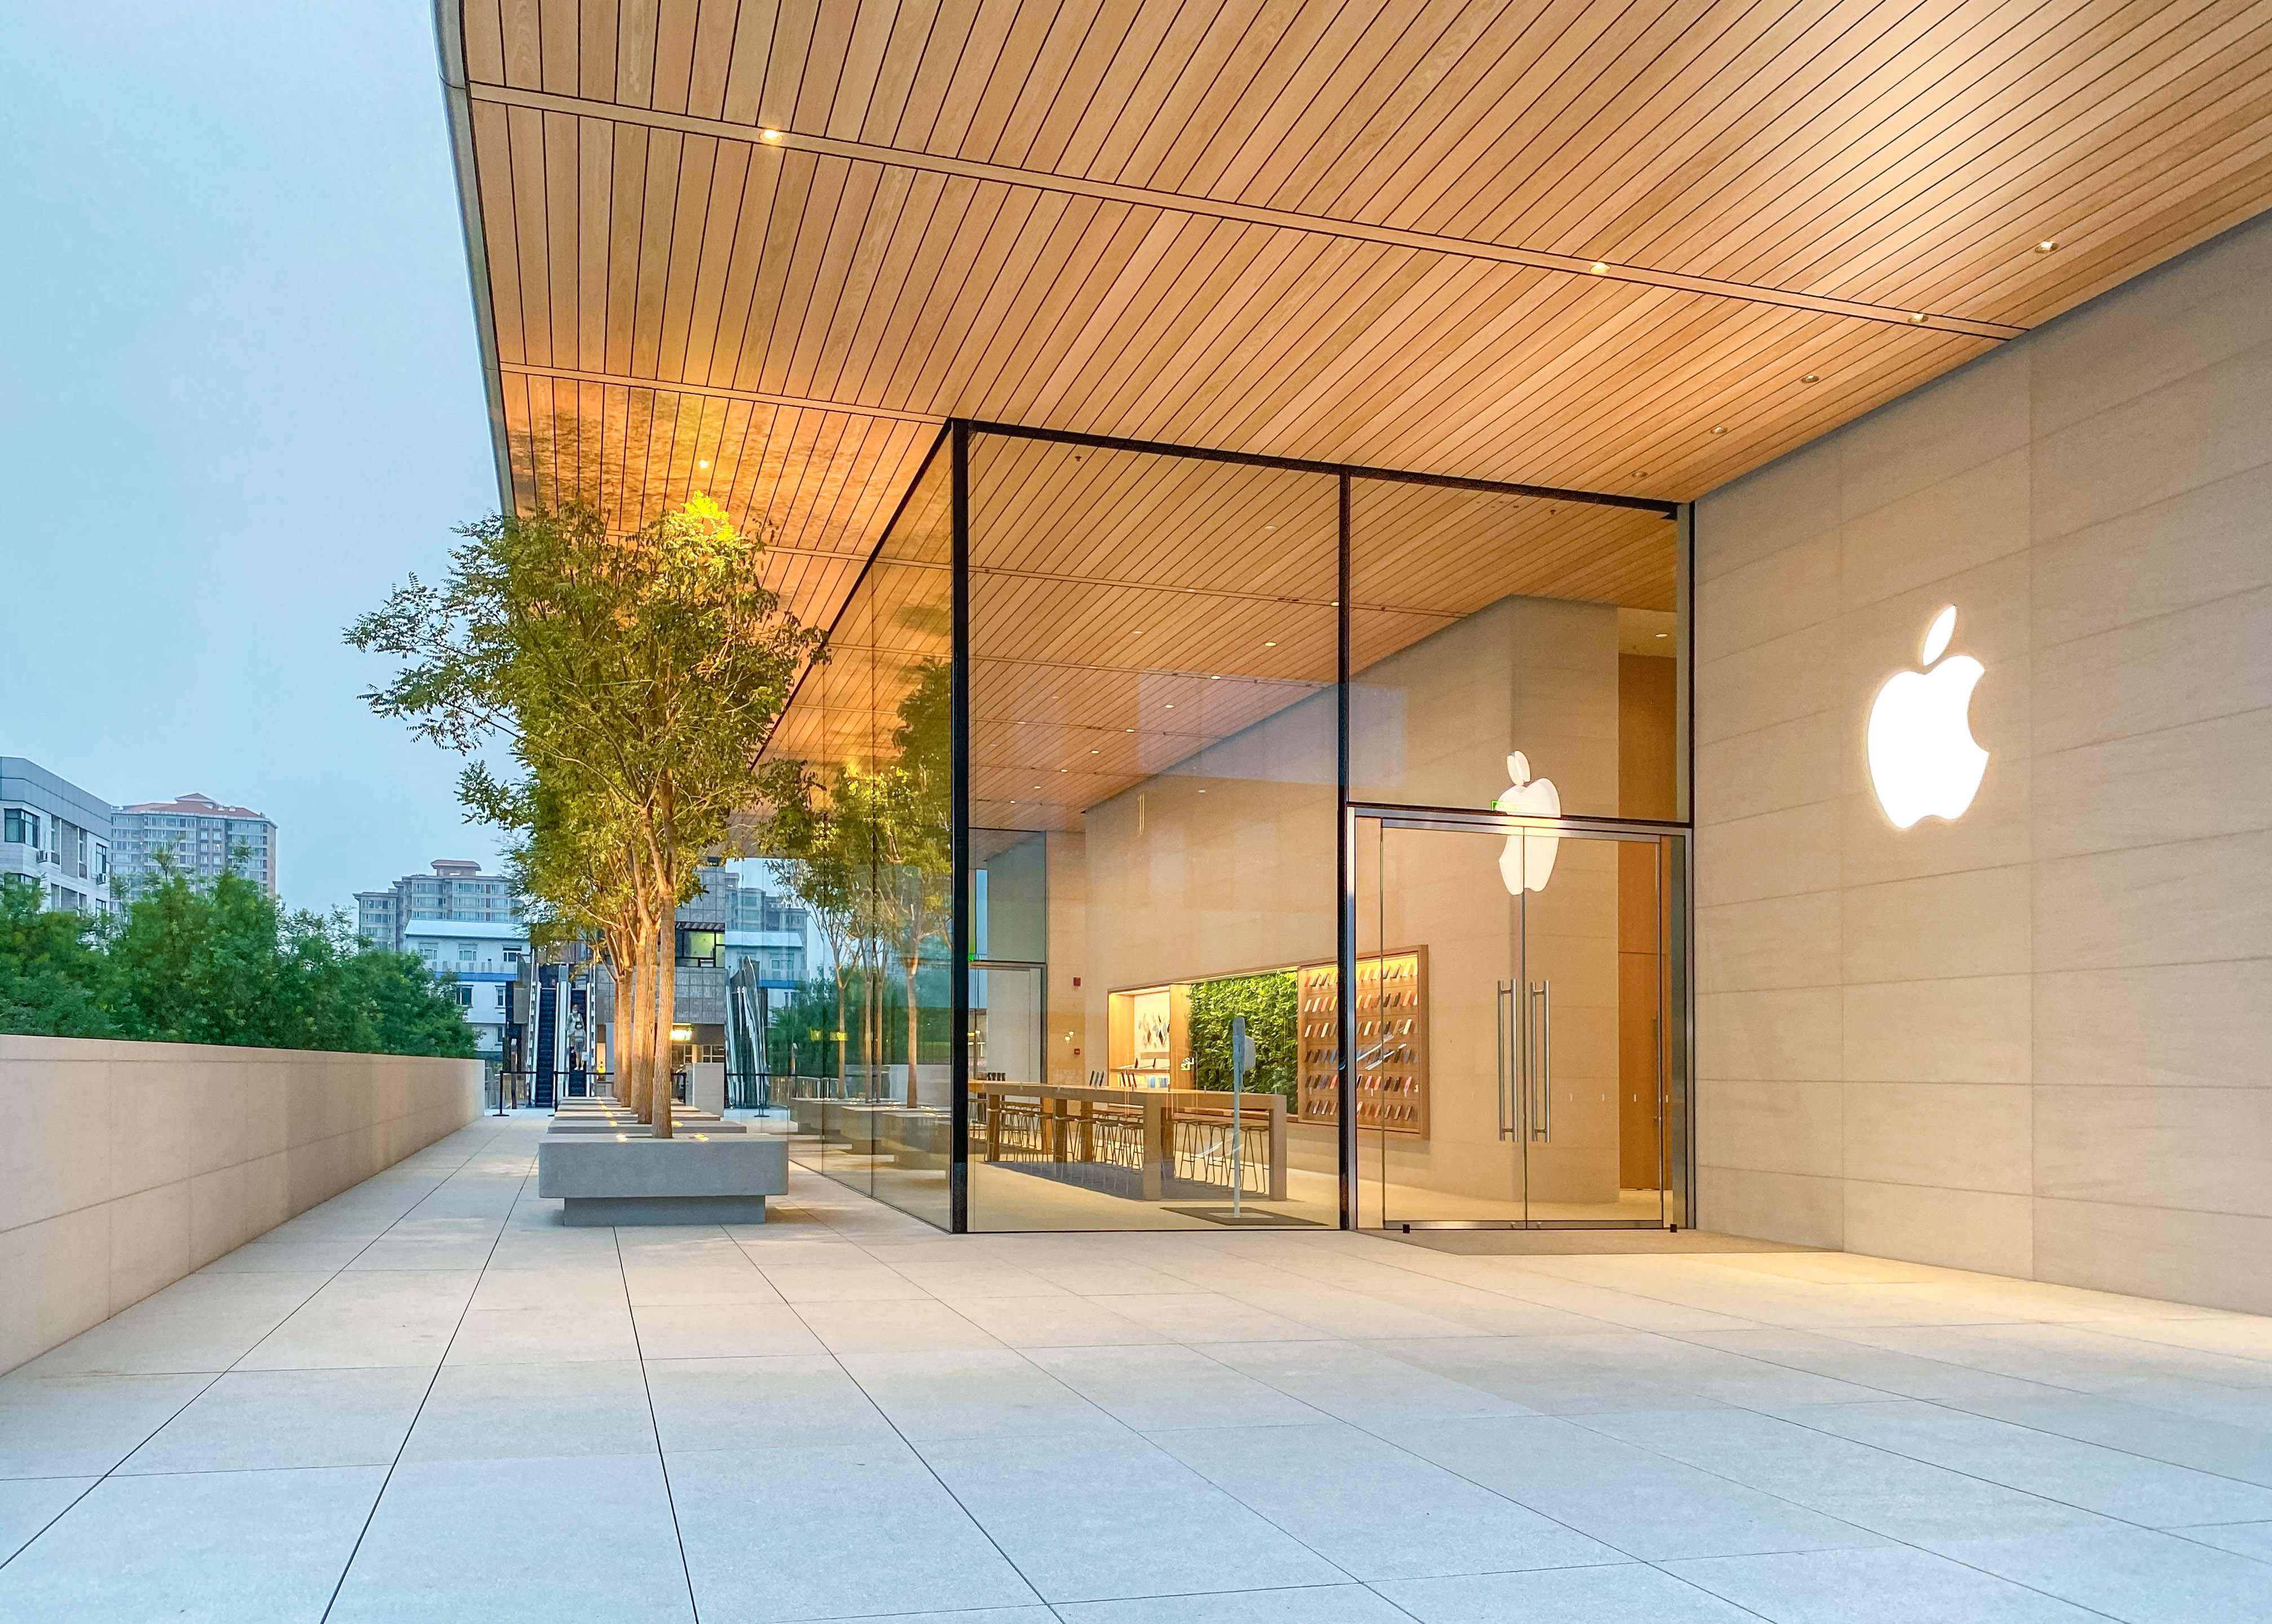 รูปภาพของผู้อ่าน Apple Sanlitun ใหม่รวบรวมสถาปัตยกรรม Apple Store ที่